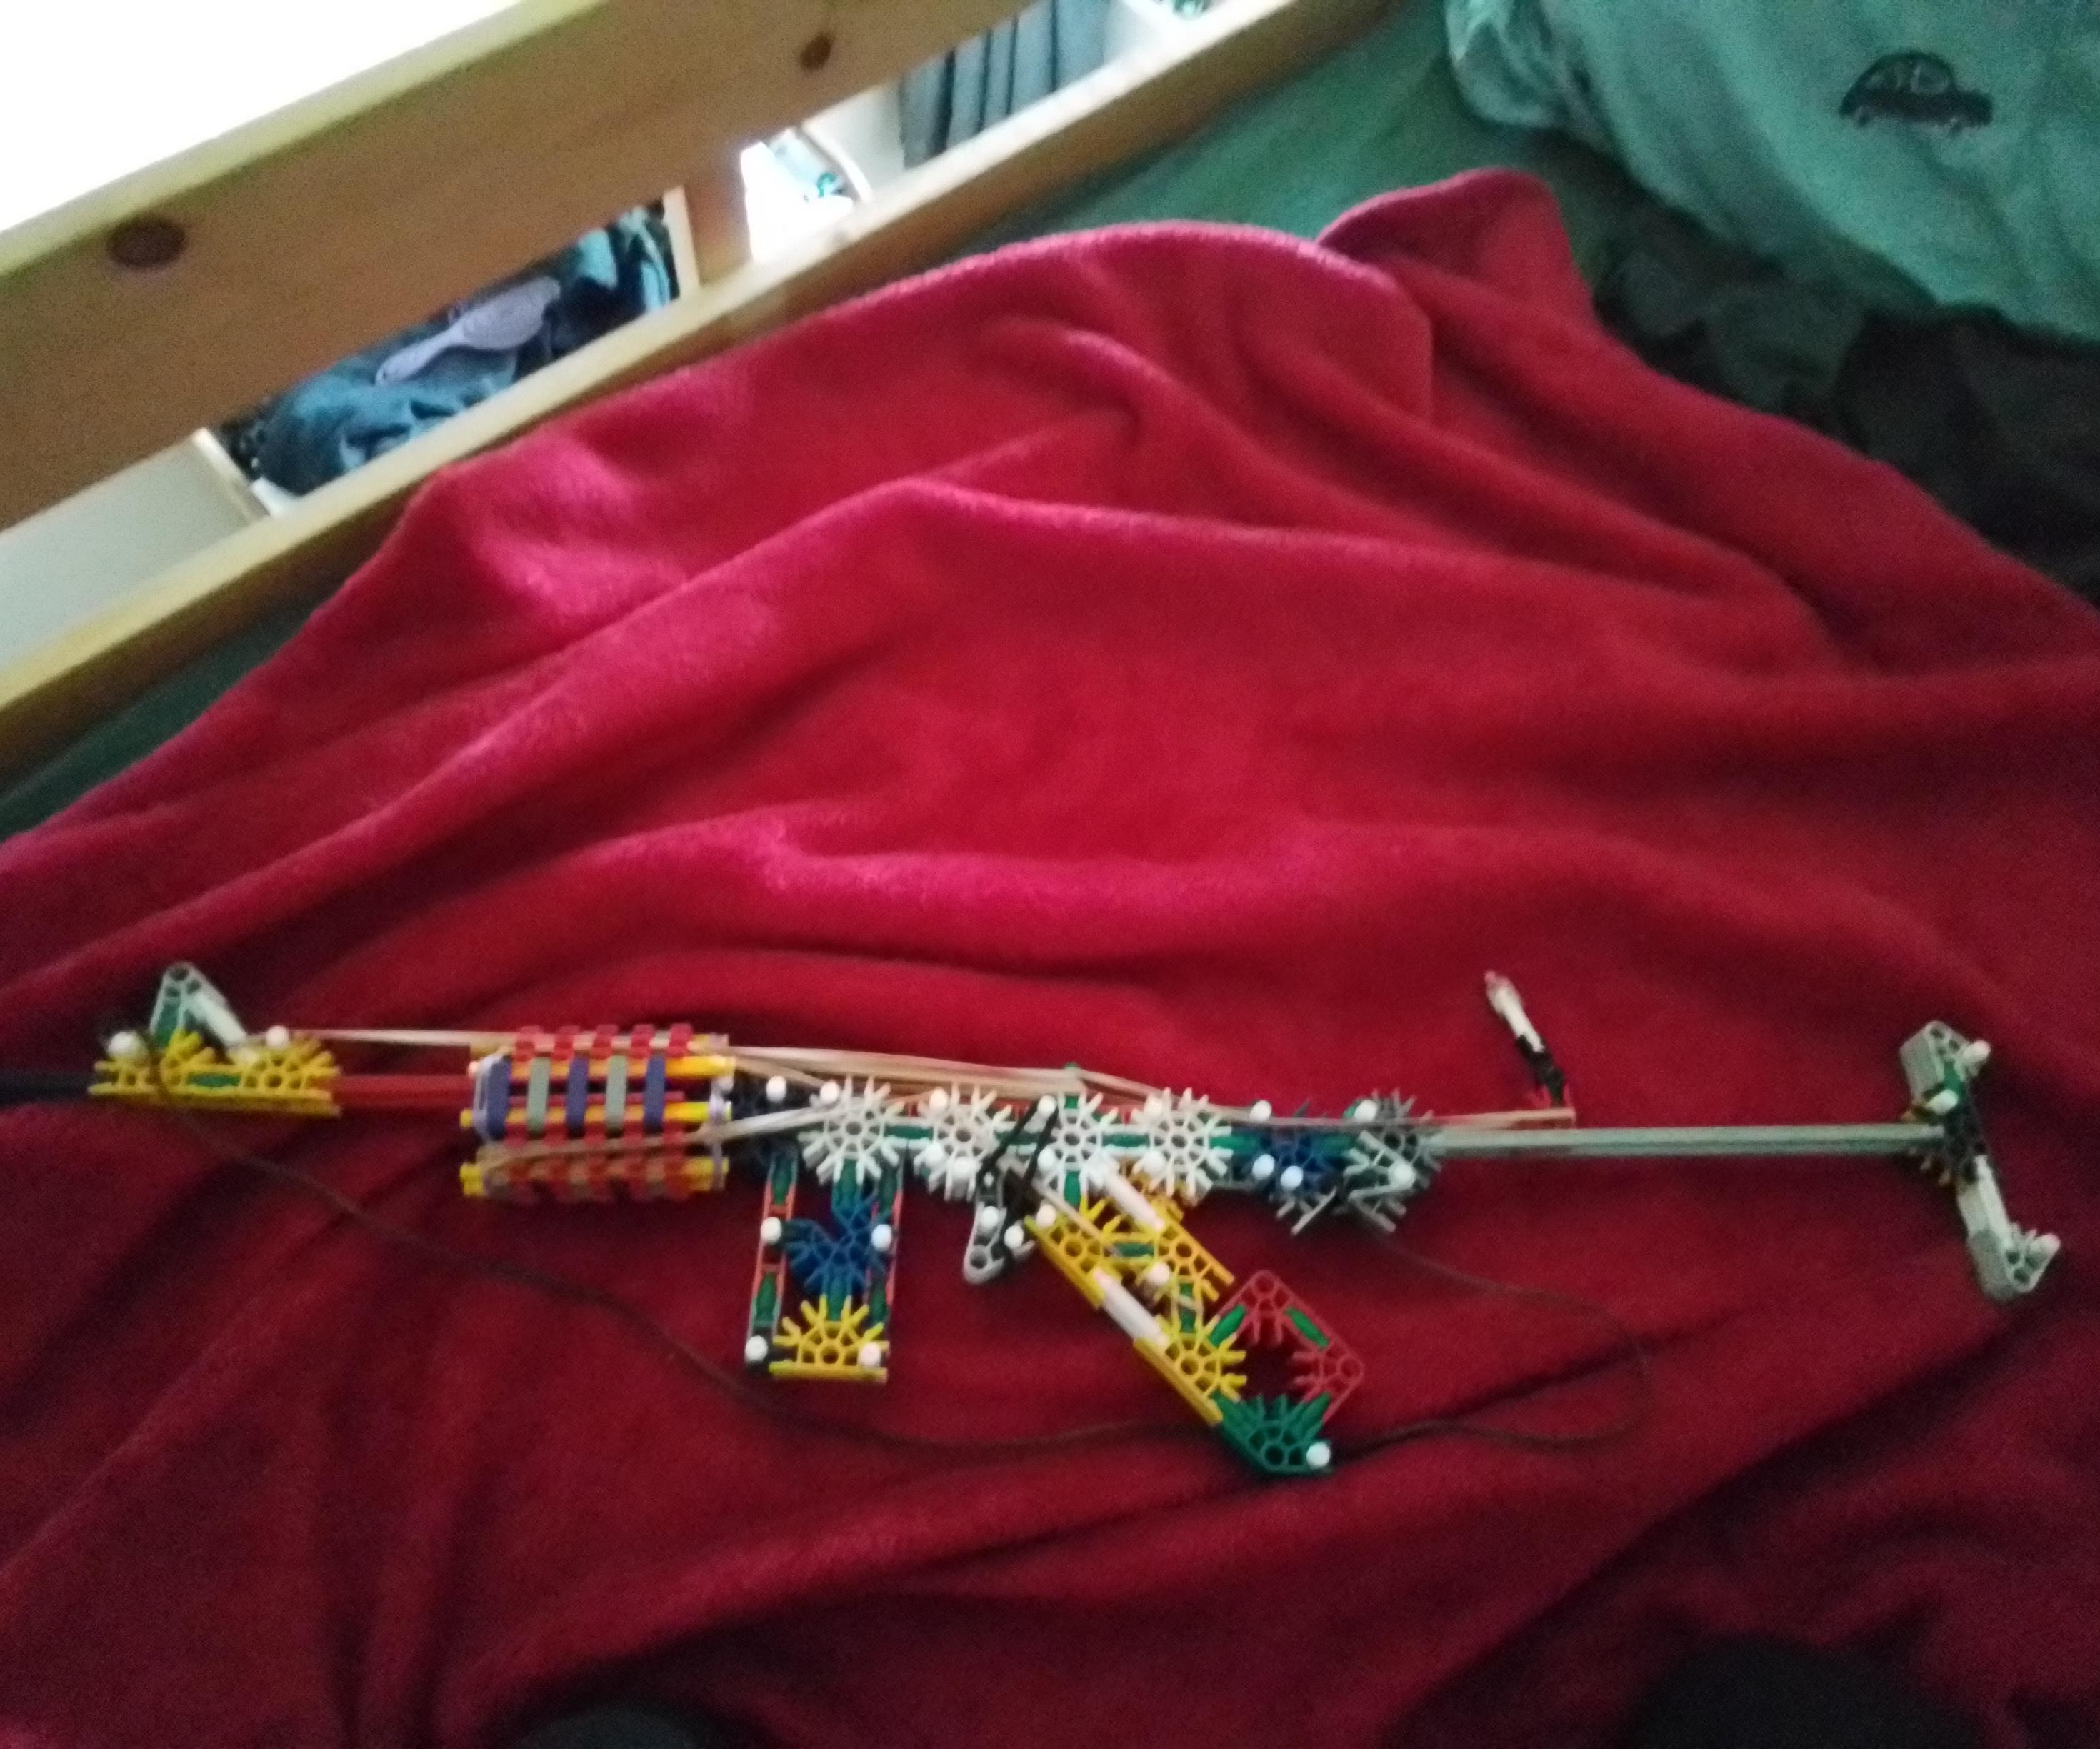 TTBKAR (The Toy Builder's Knex Assault Rifle).